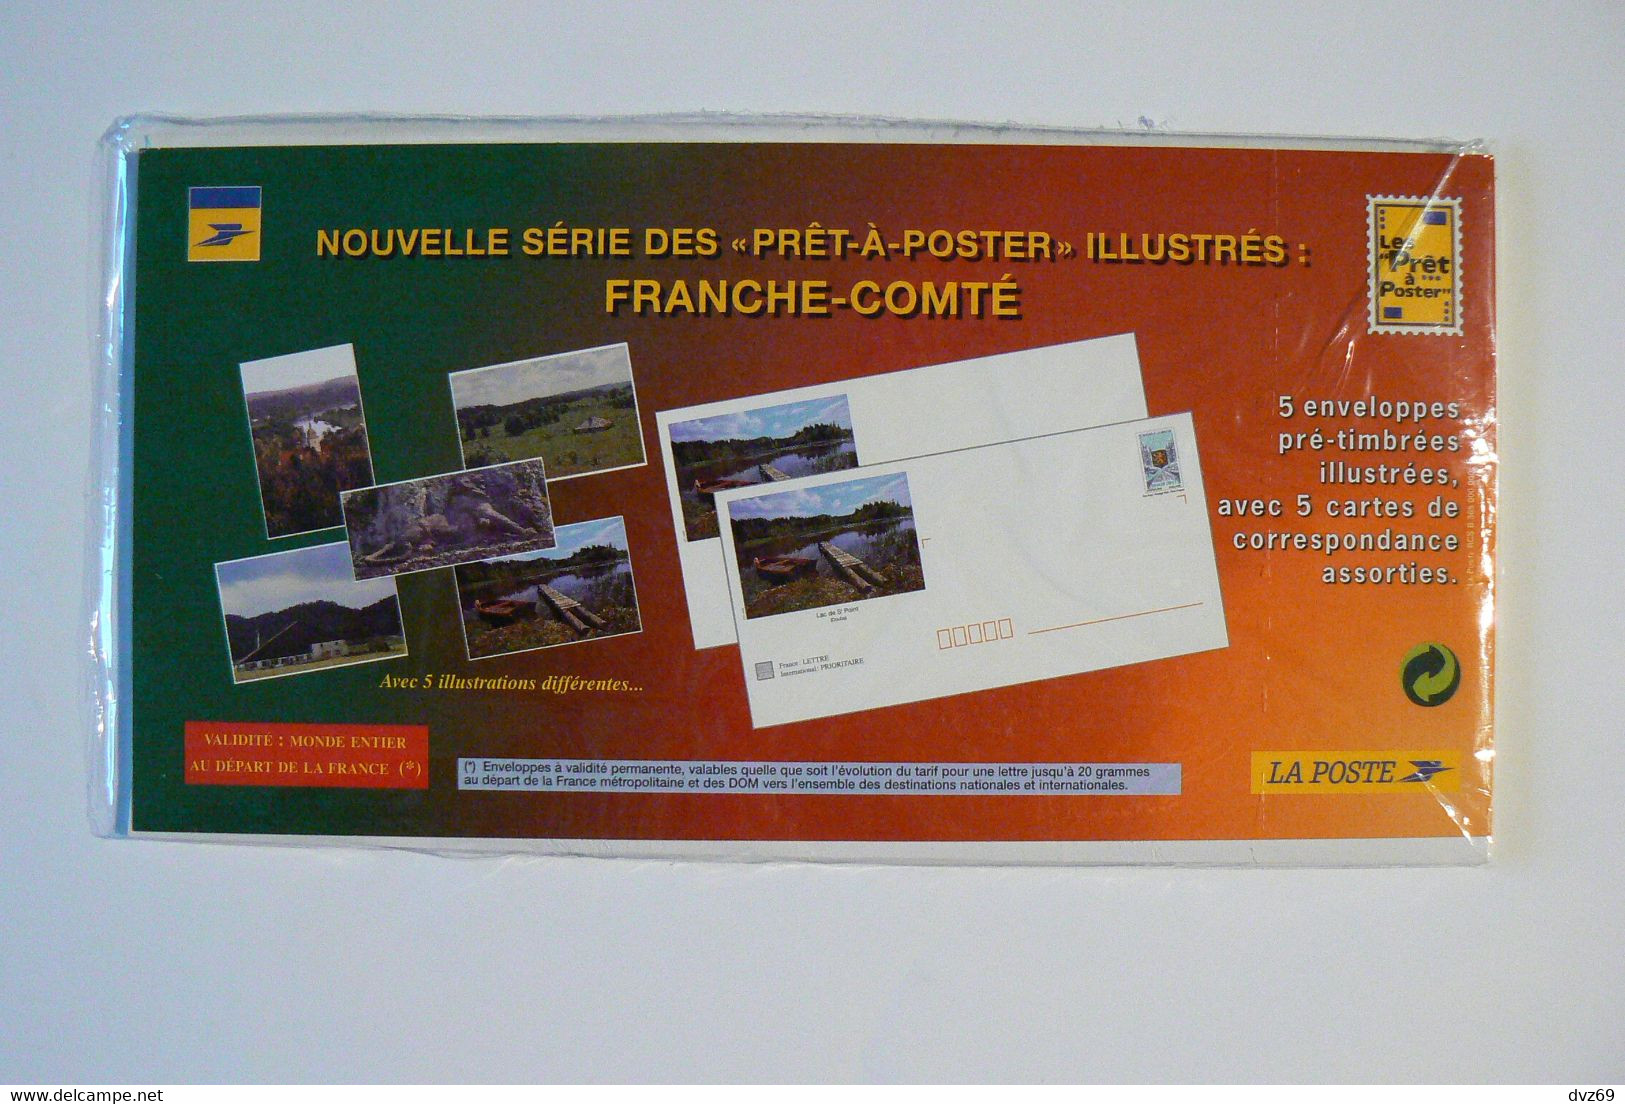 FRANCHE-COMTE, 5 Enveloppes Pré-timbrées Illustrées + Cartes Assorties, Oblitération 1er Jour 30 Juin 1997,, TB. - Konvolute: Ganzsachen & PAP